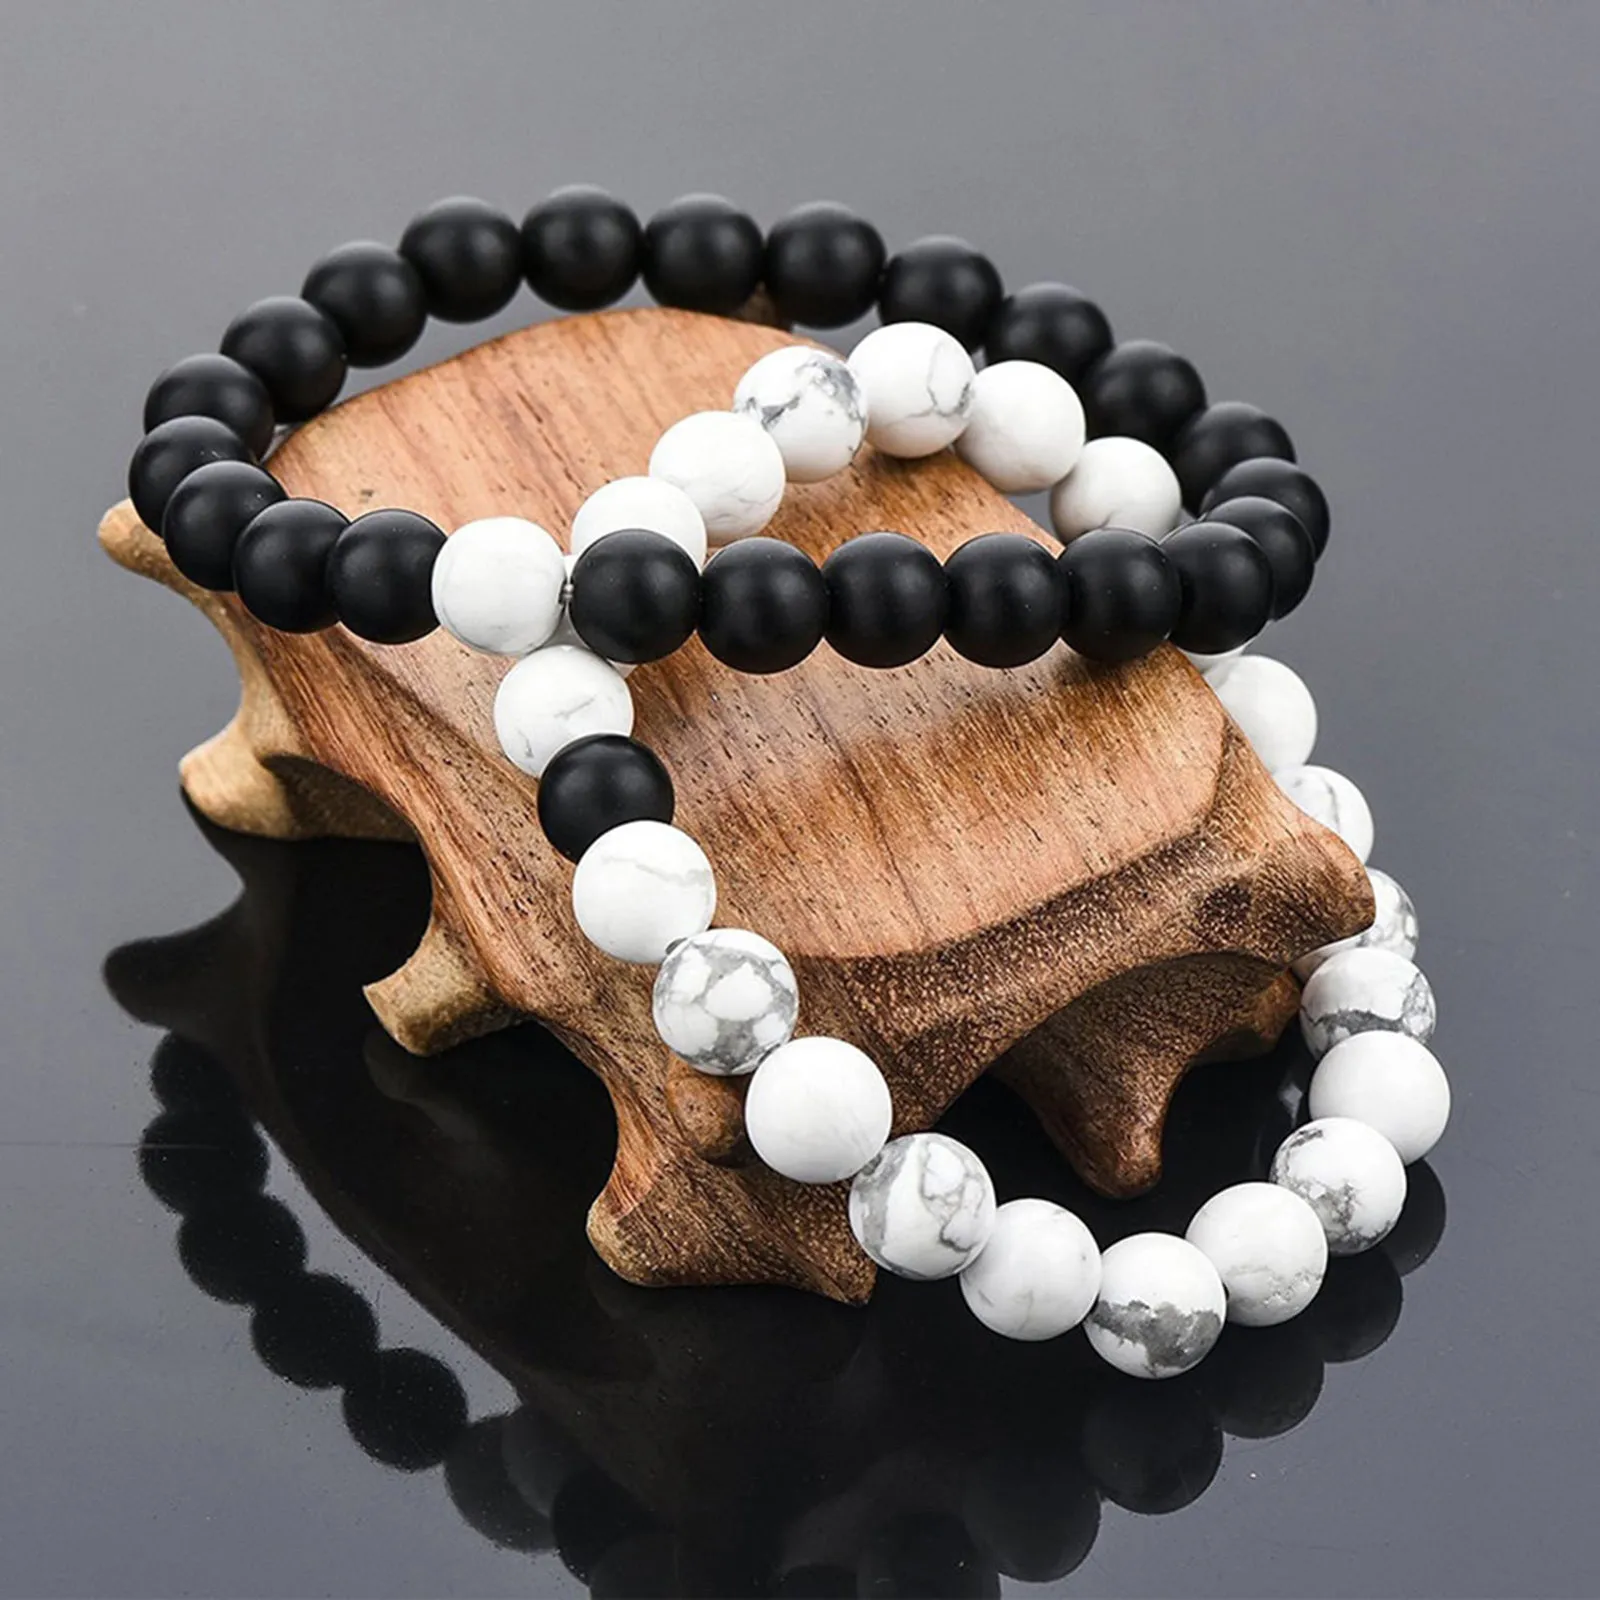 

Trendy Black White Turquoises Stone Charm Bracelet Men Women Wood Beads Bracelet Handmade Bracelets&bangles Pulseira Masculina